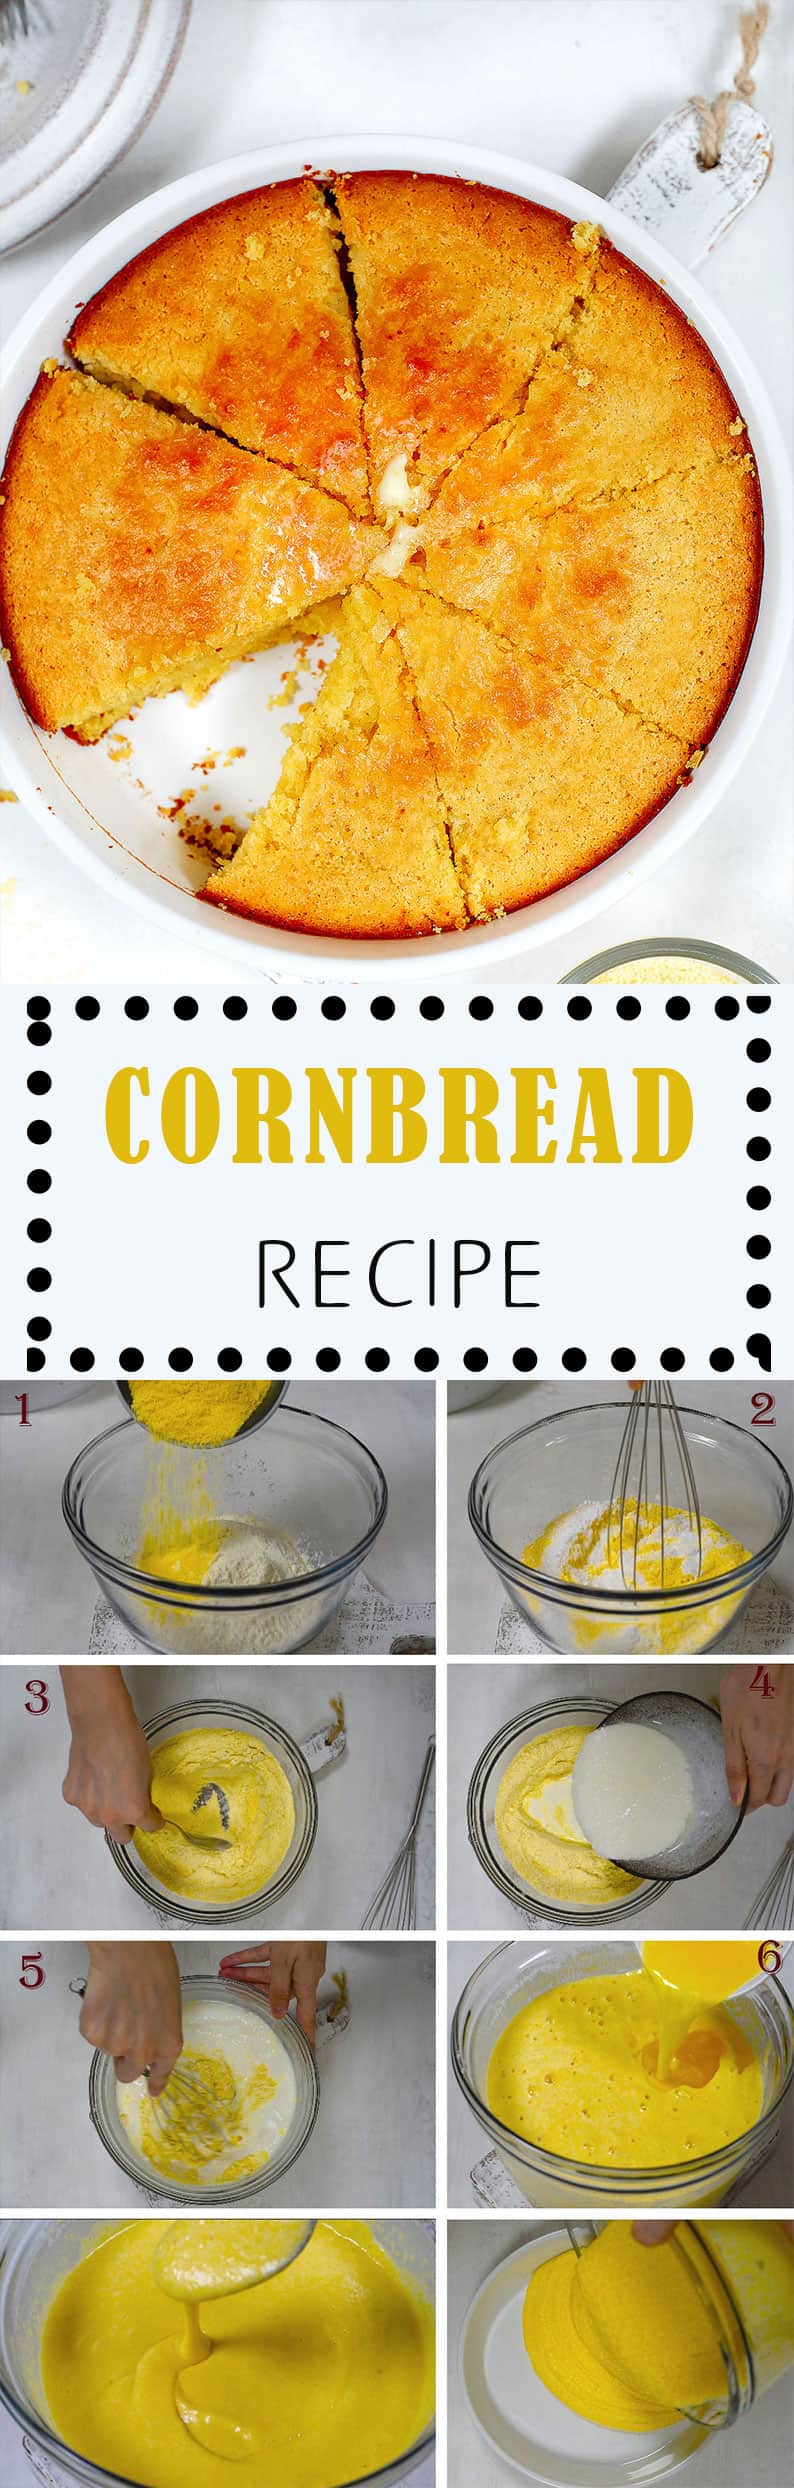 cornbread-recipe